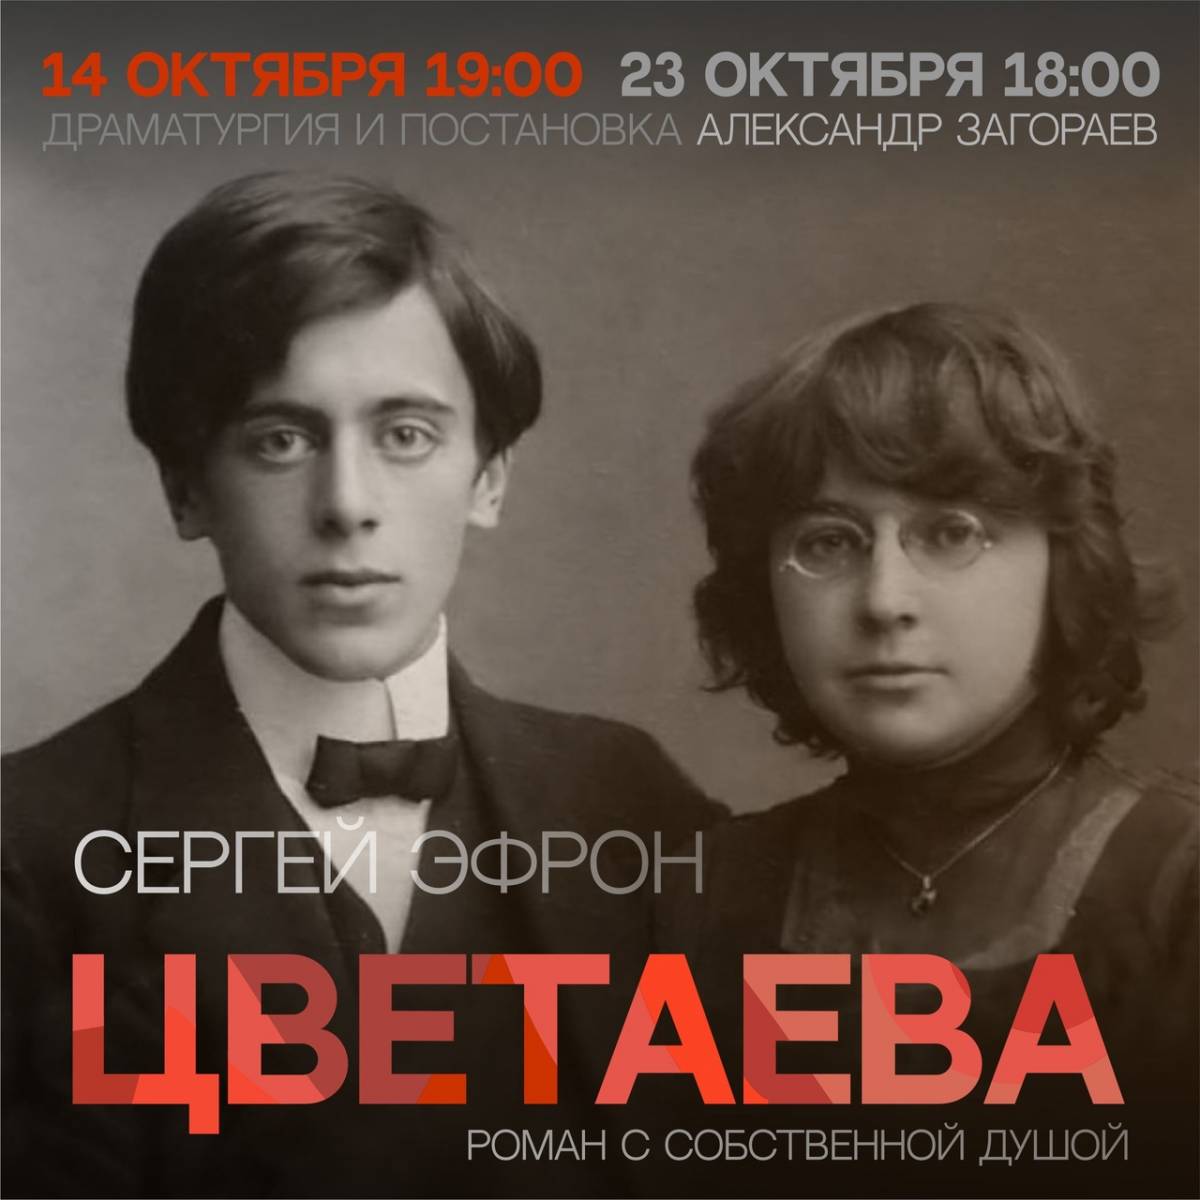 В день премьеры спектакля «Цветаева» меню буфета Новгородского театра драмы станет «поэтическим»